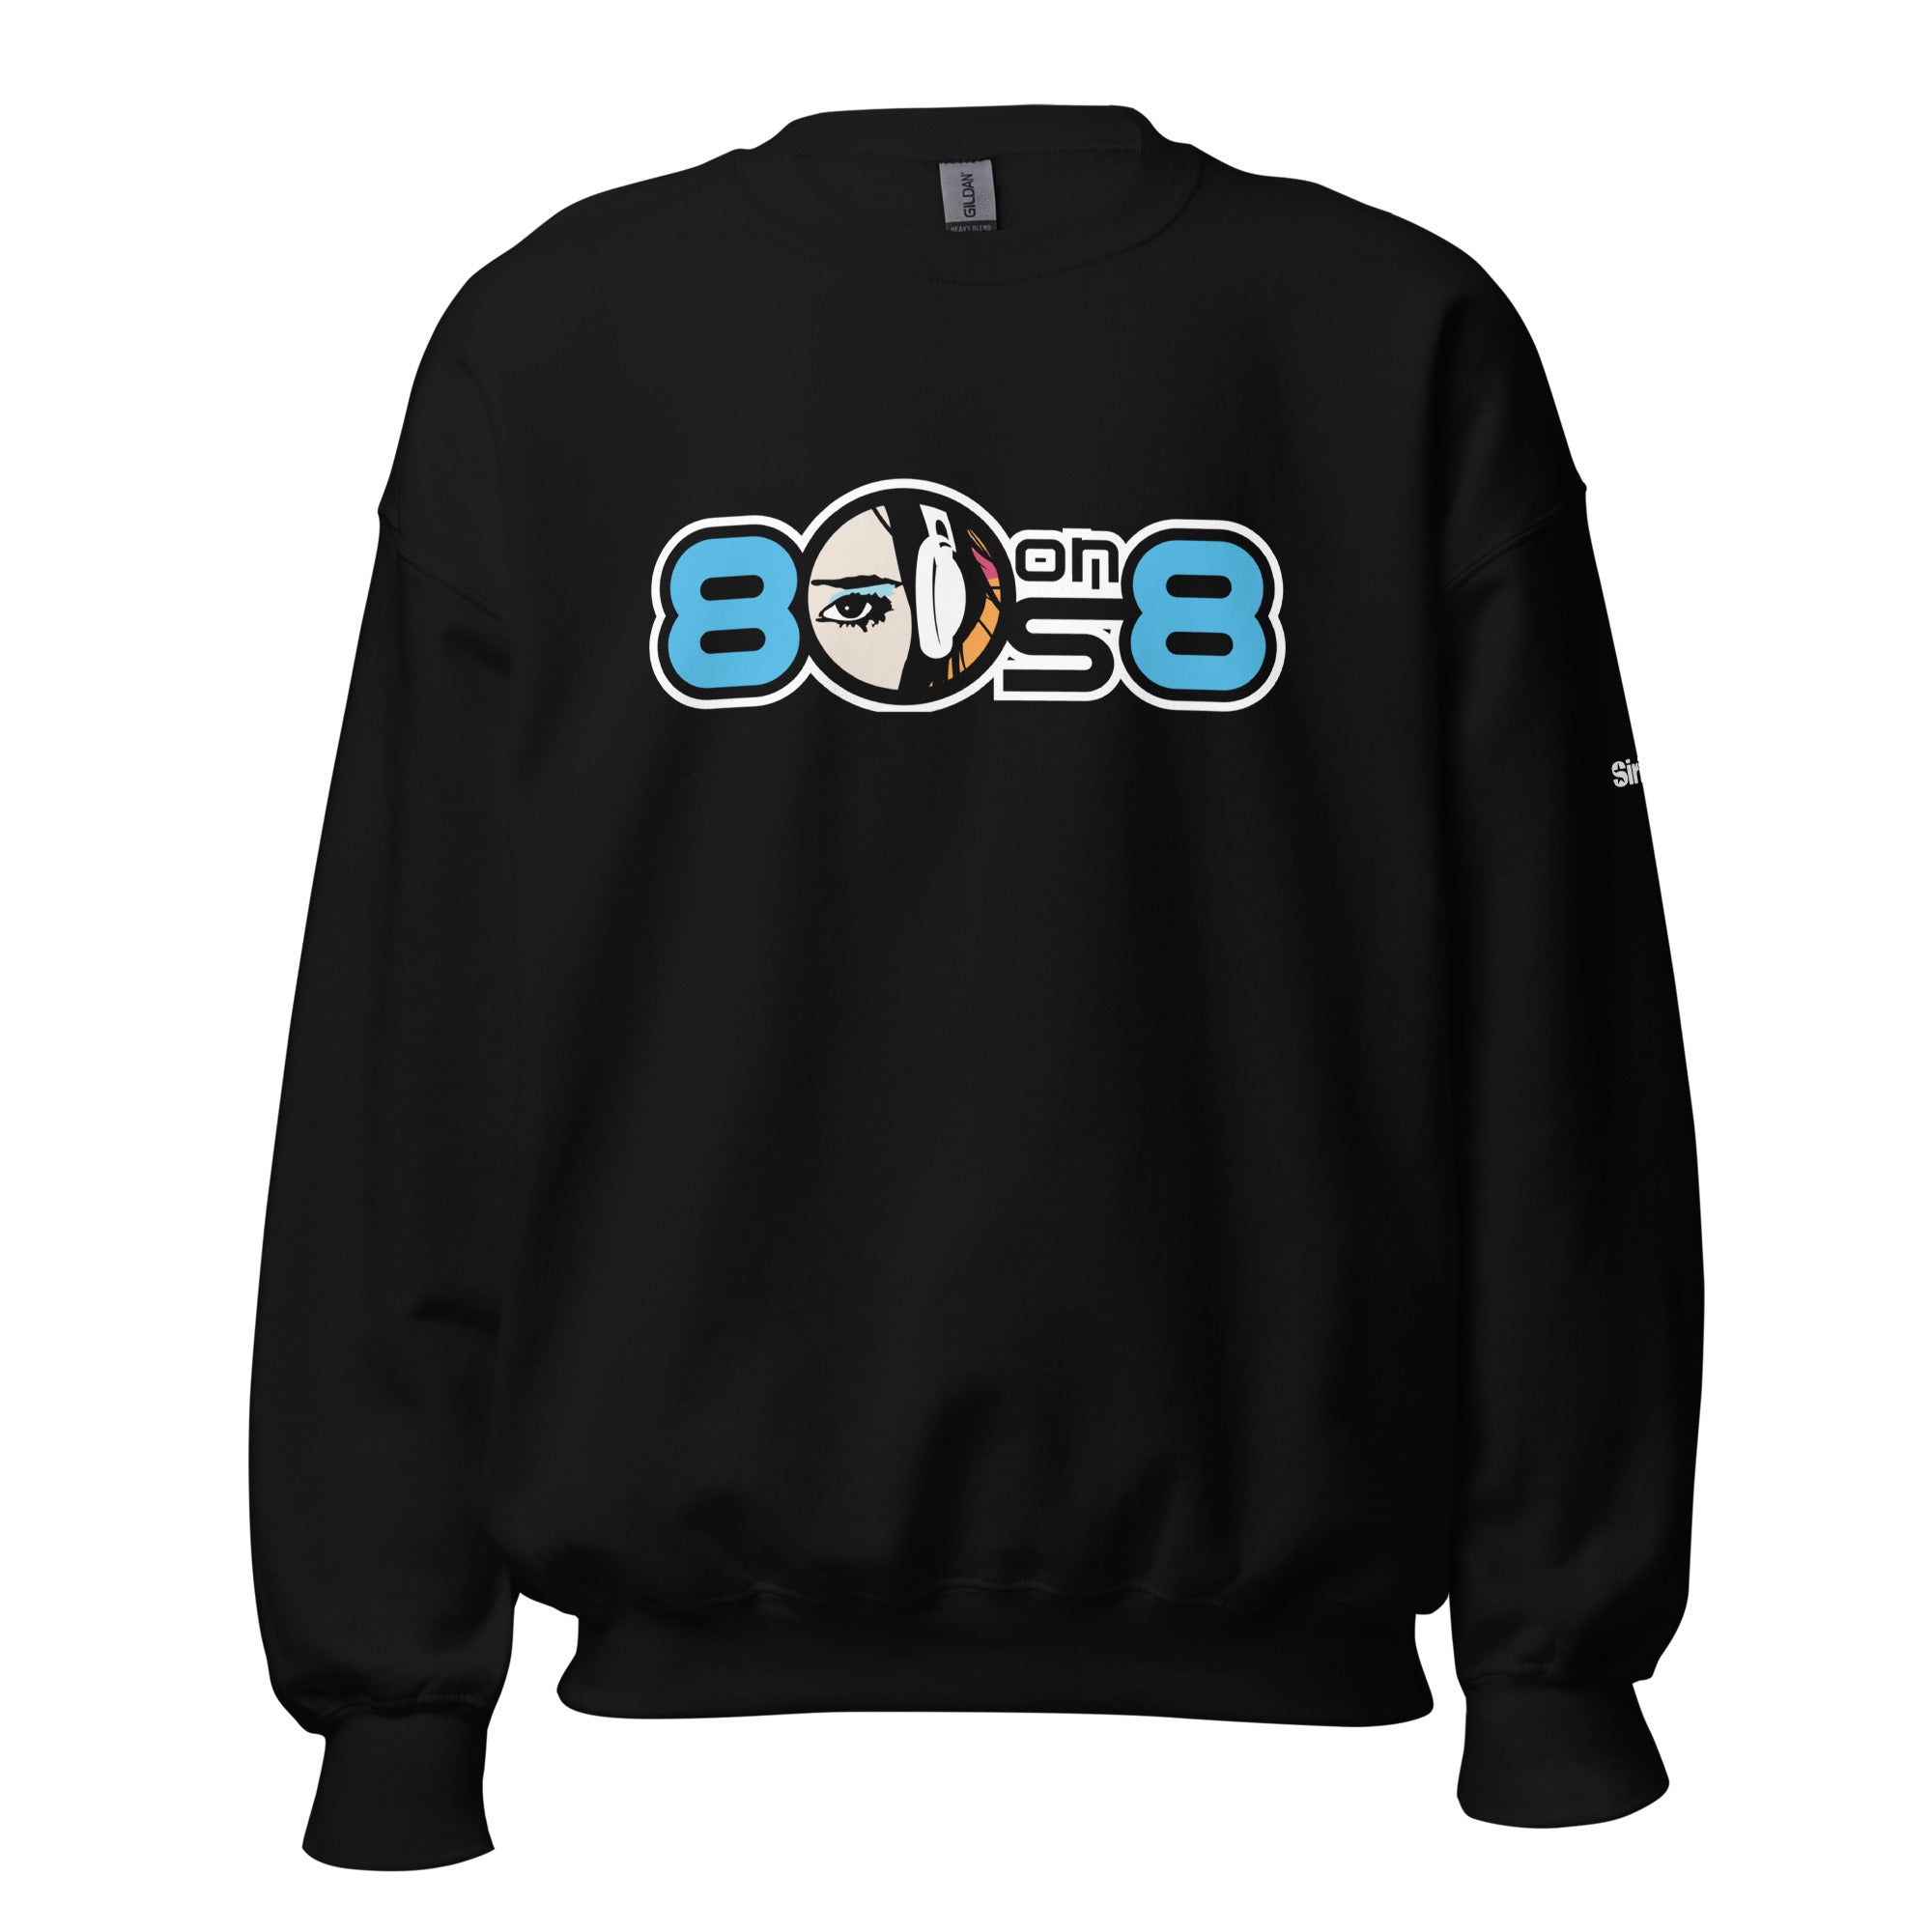 80s on 8: Sweatshirt (Black)